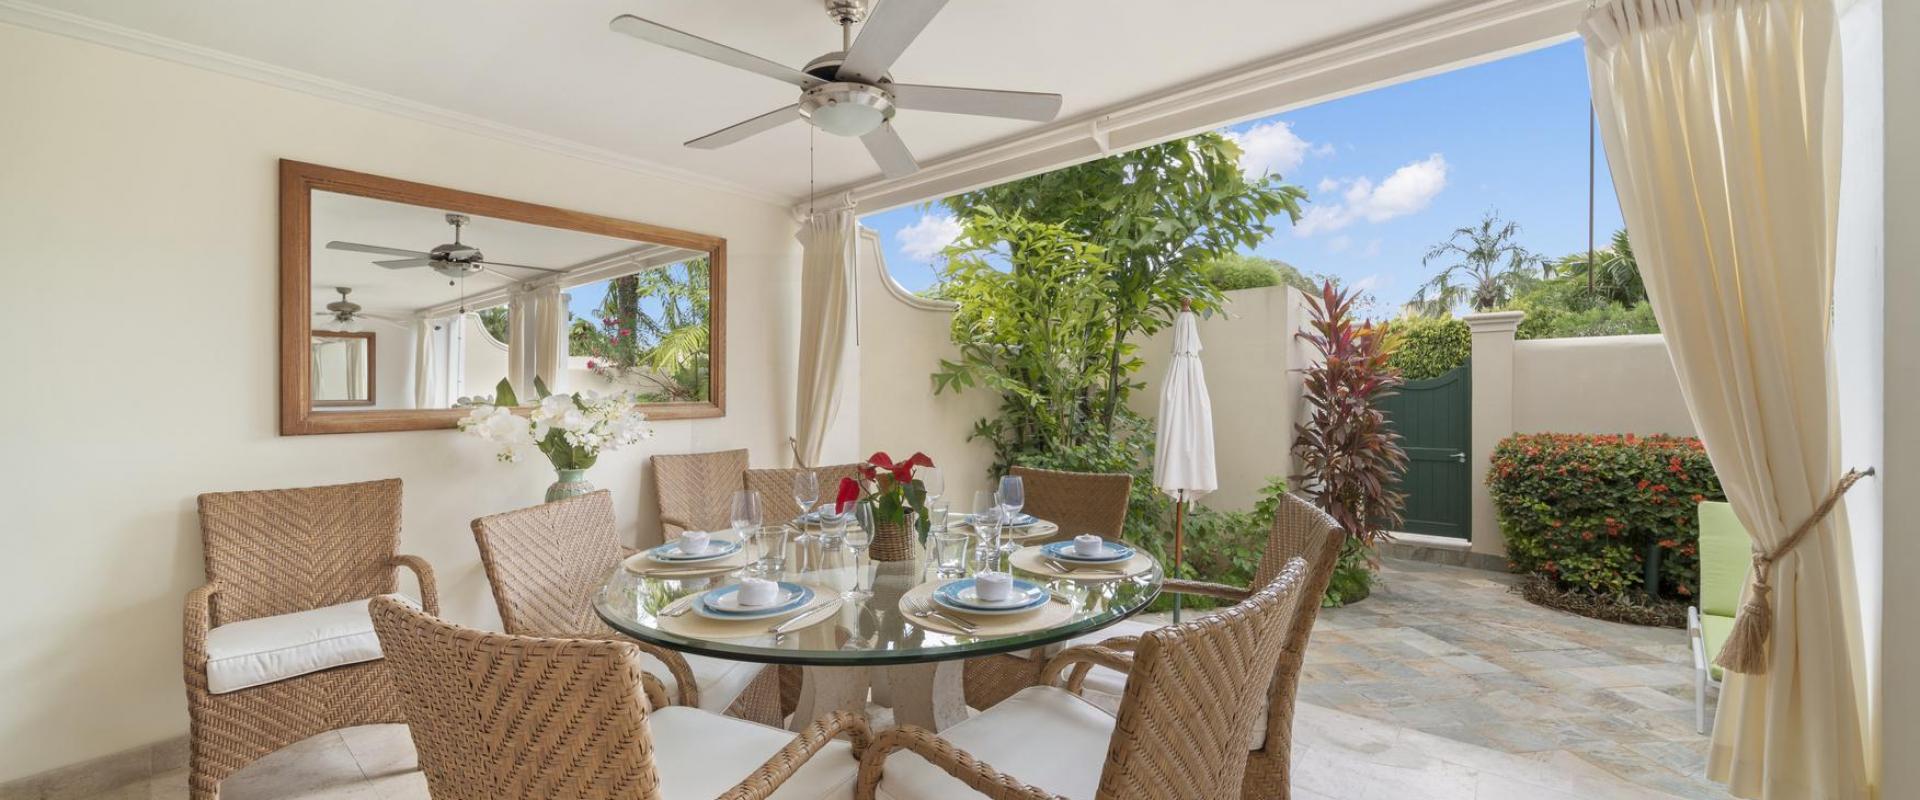 Hummingbird Villa Mullins Bay Barbados Outside Dining Area